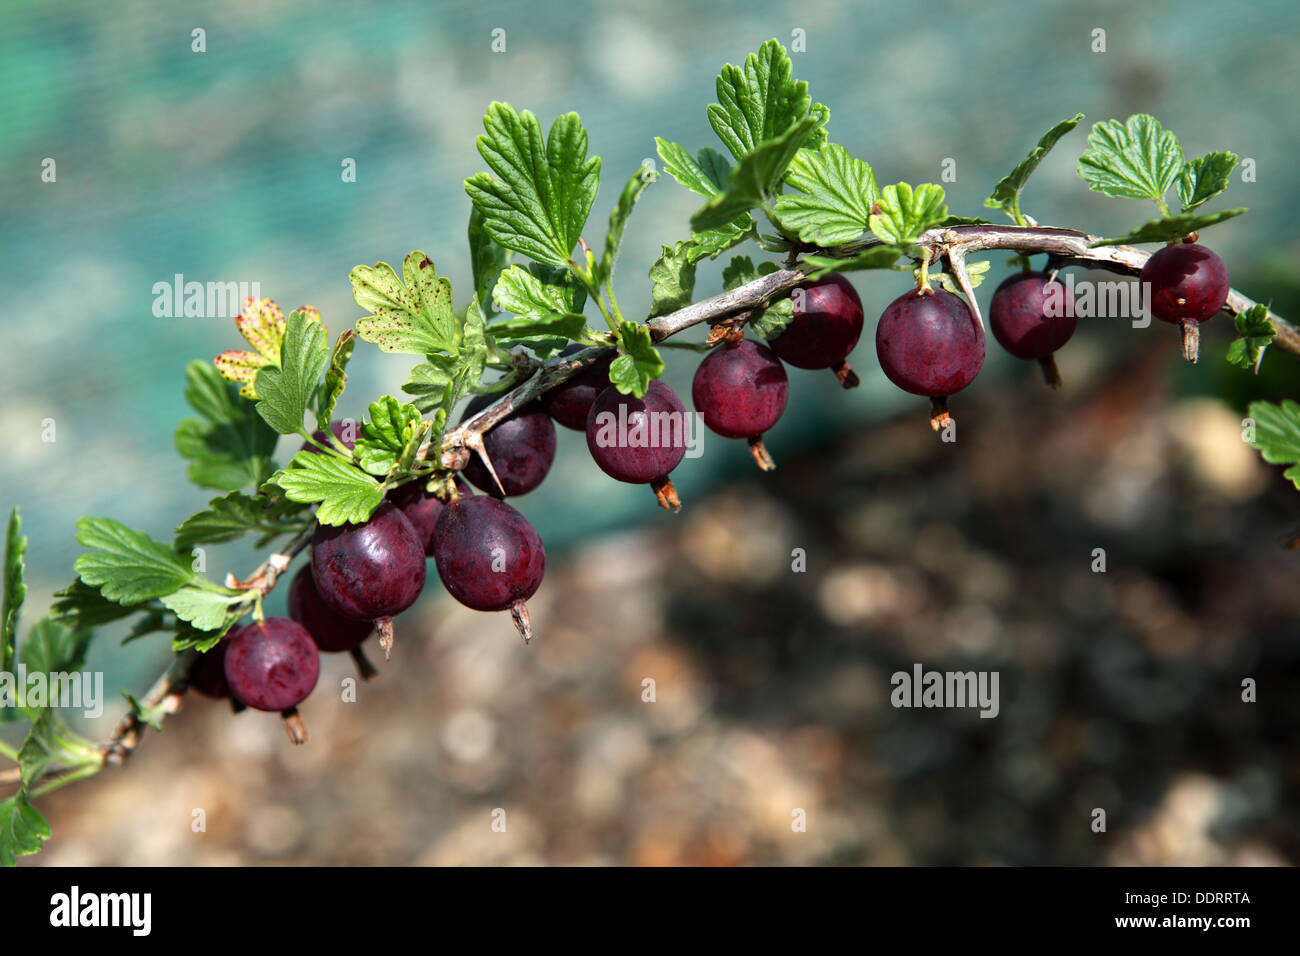 Stachelbeeren, 'Hinnomaki rot'. Beerenobst in einem Obst-Käfig. Blattflecken auf einigen Blättern Stockfoto